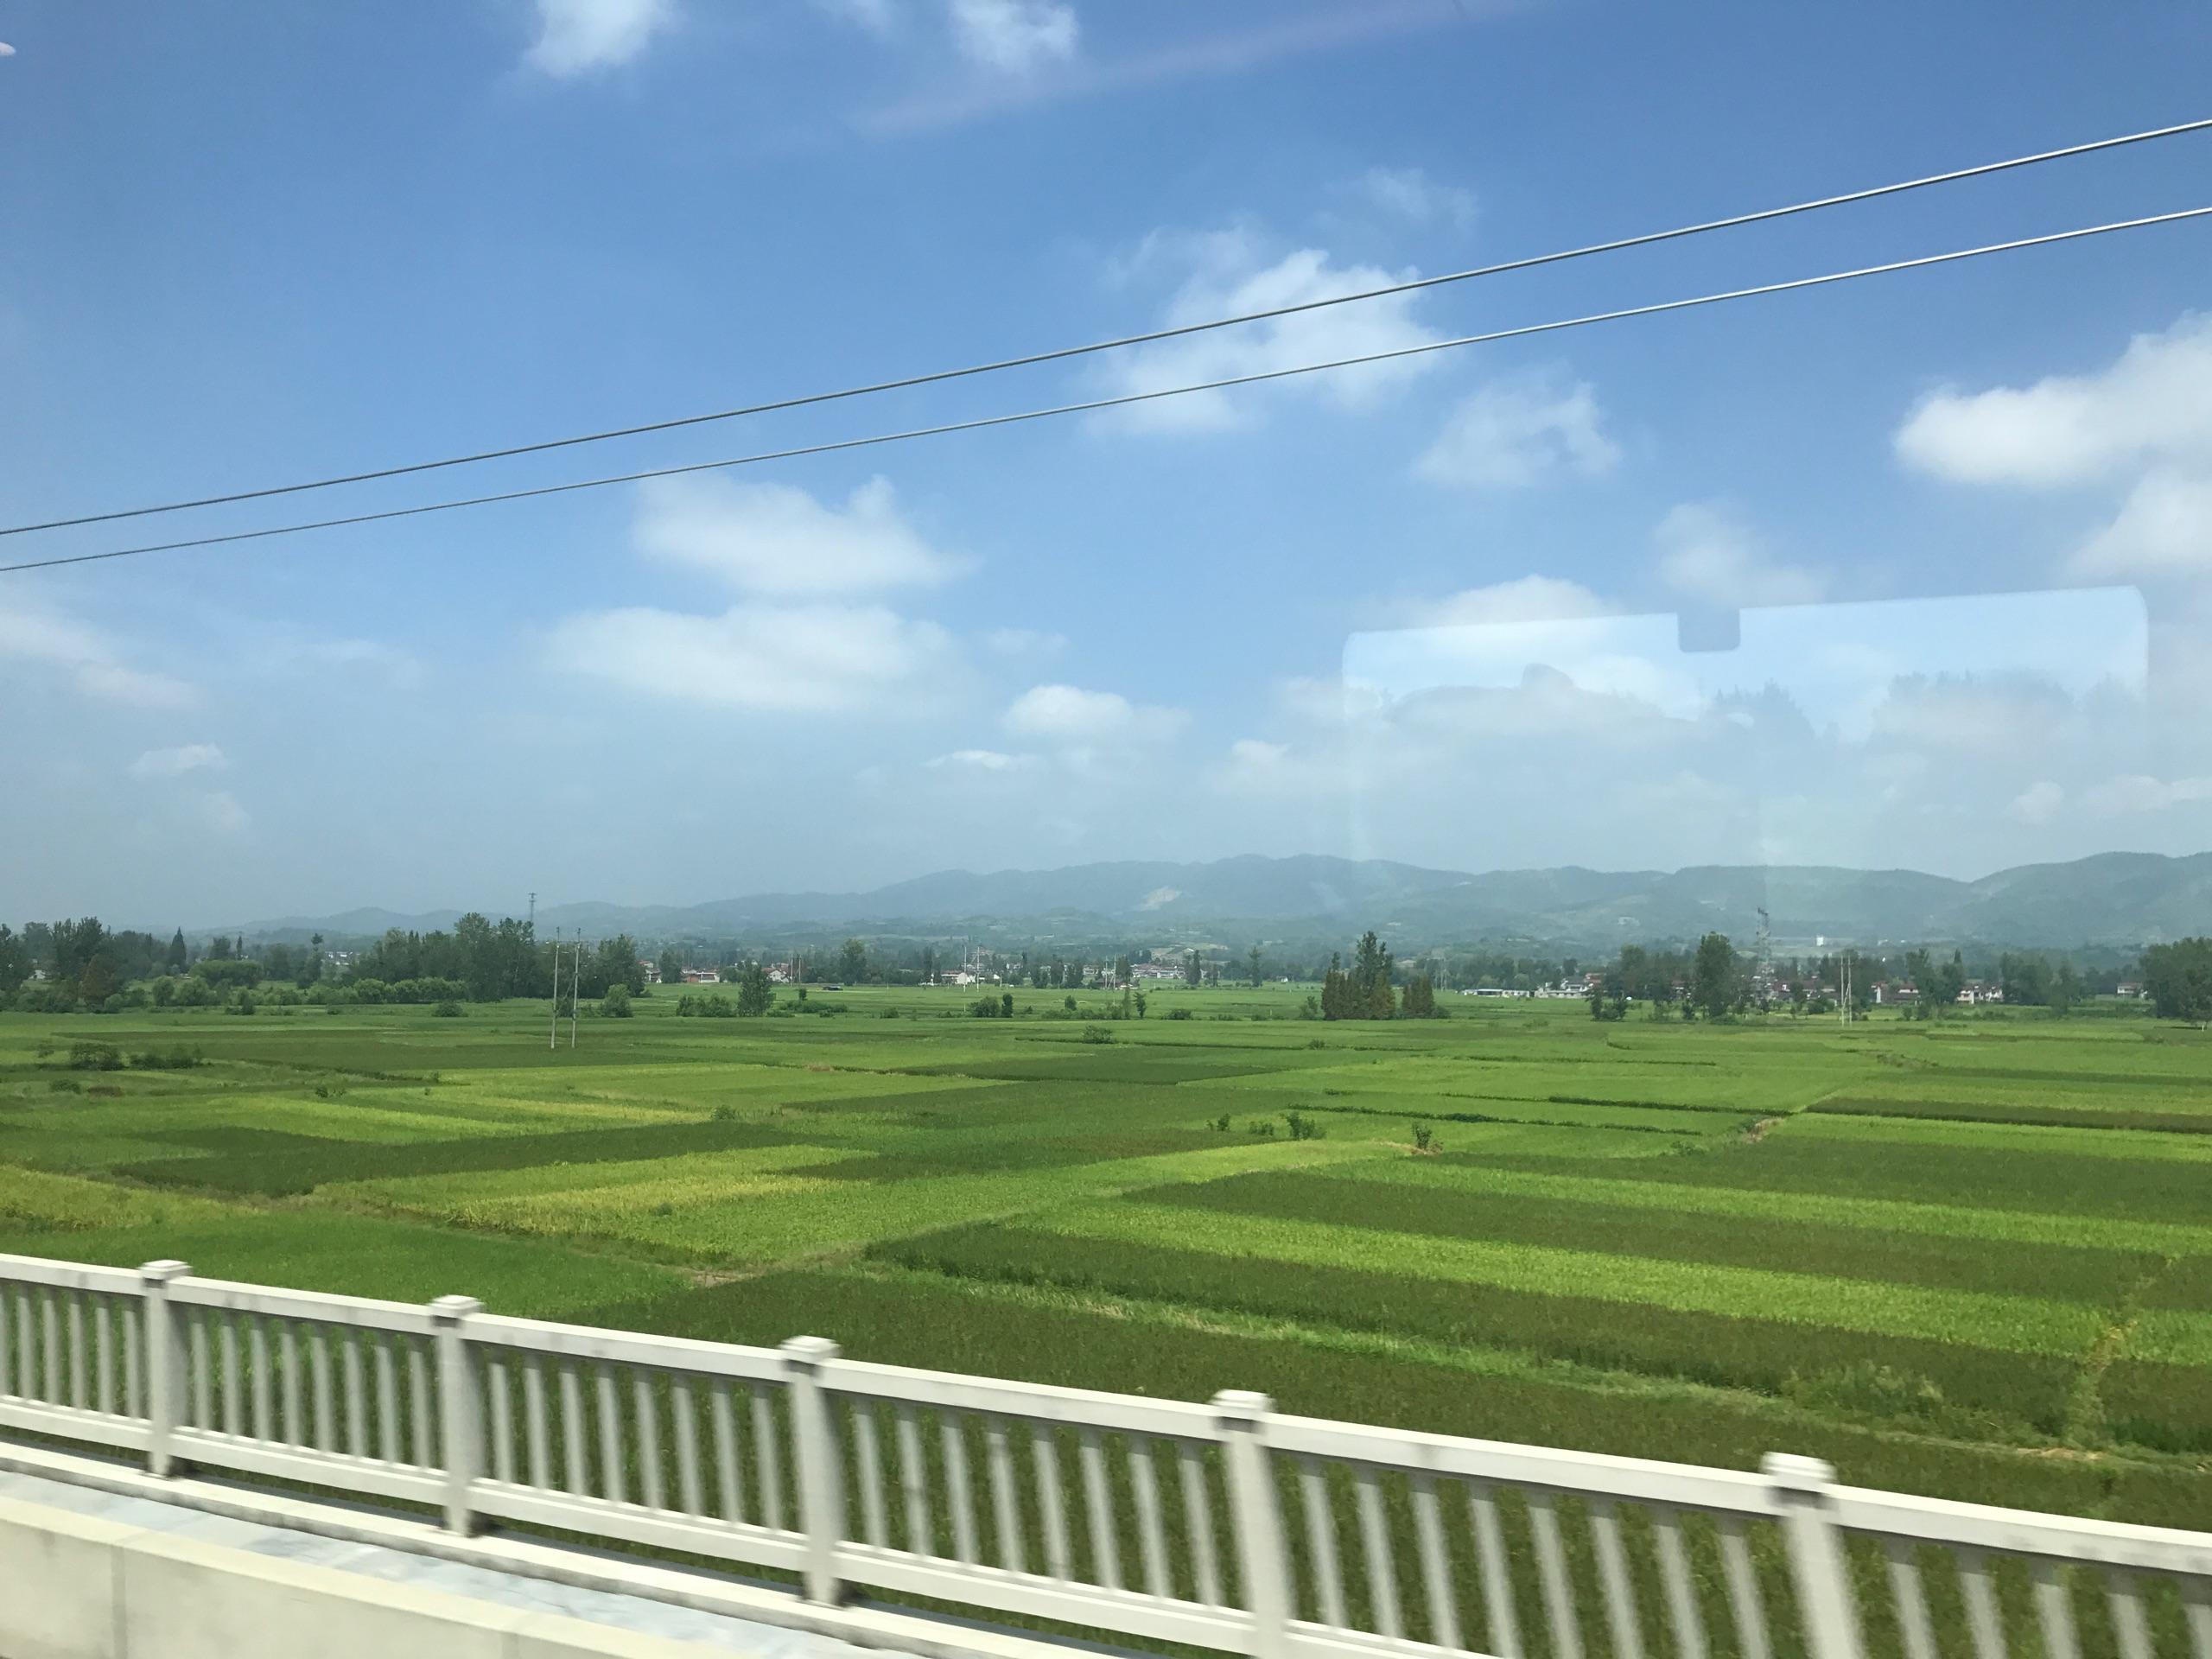 成都到西安的高铁路线沿途风景美吗? 